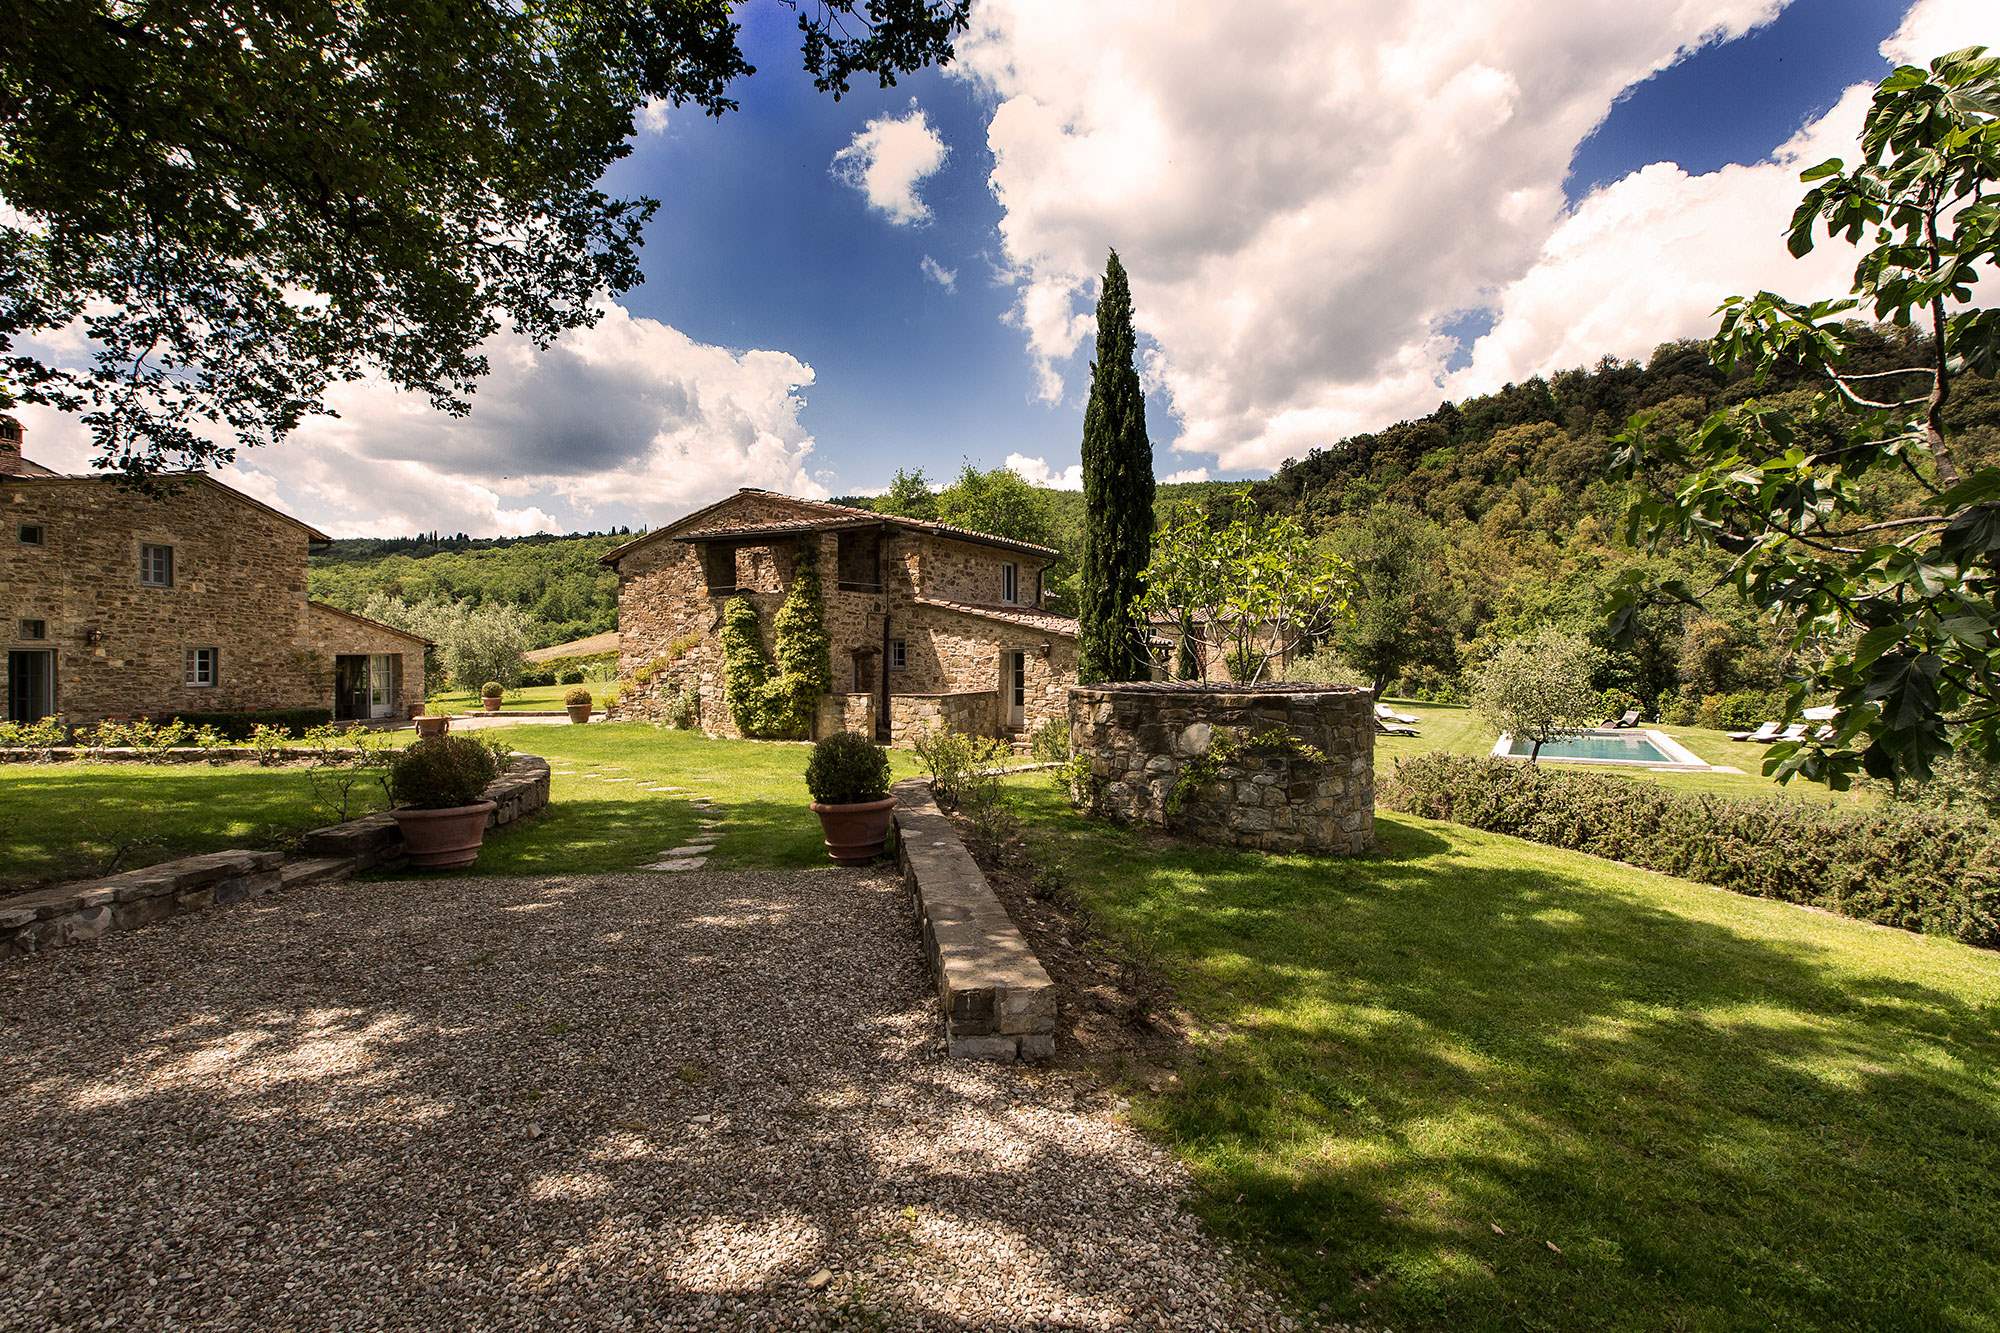 Villa Grande, Main Villa, Cottage,Studio & Barn, up to 22 persons , 11 bedroom villa in Chianti & Countryside, Tuscany Photo #11